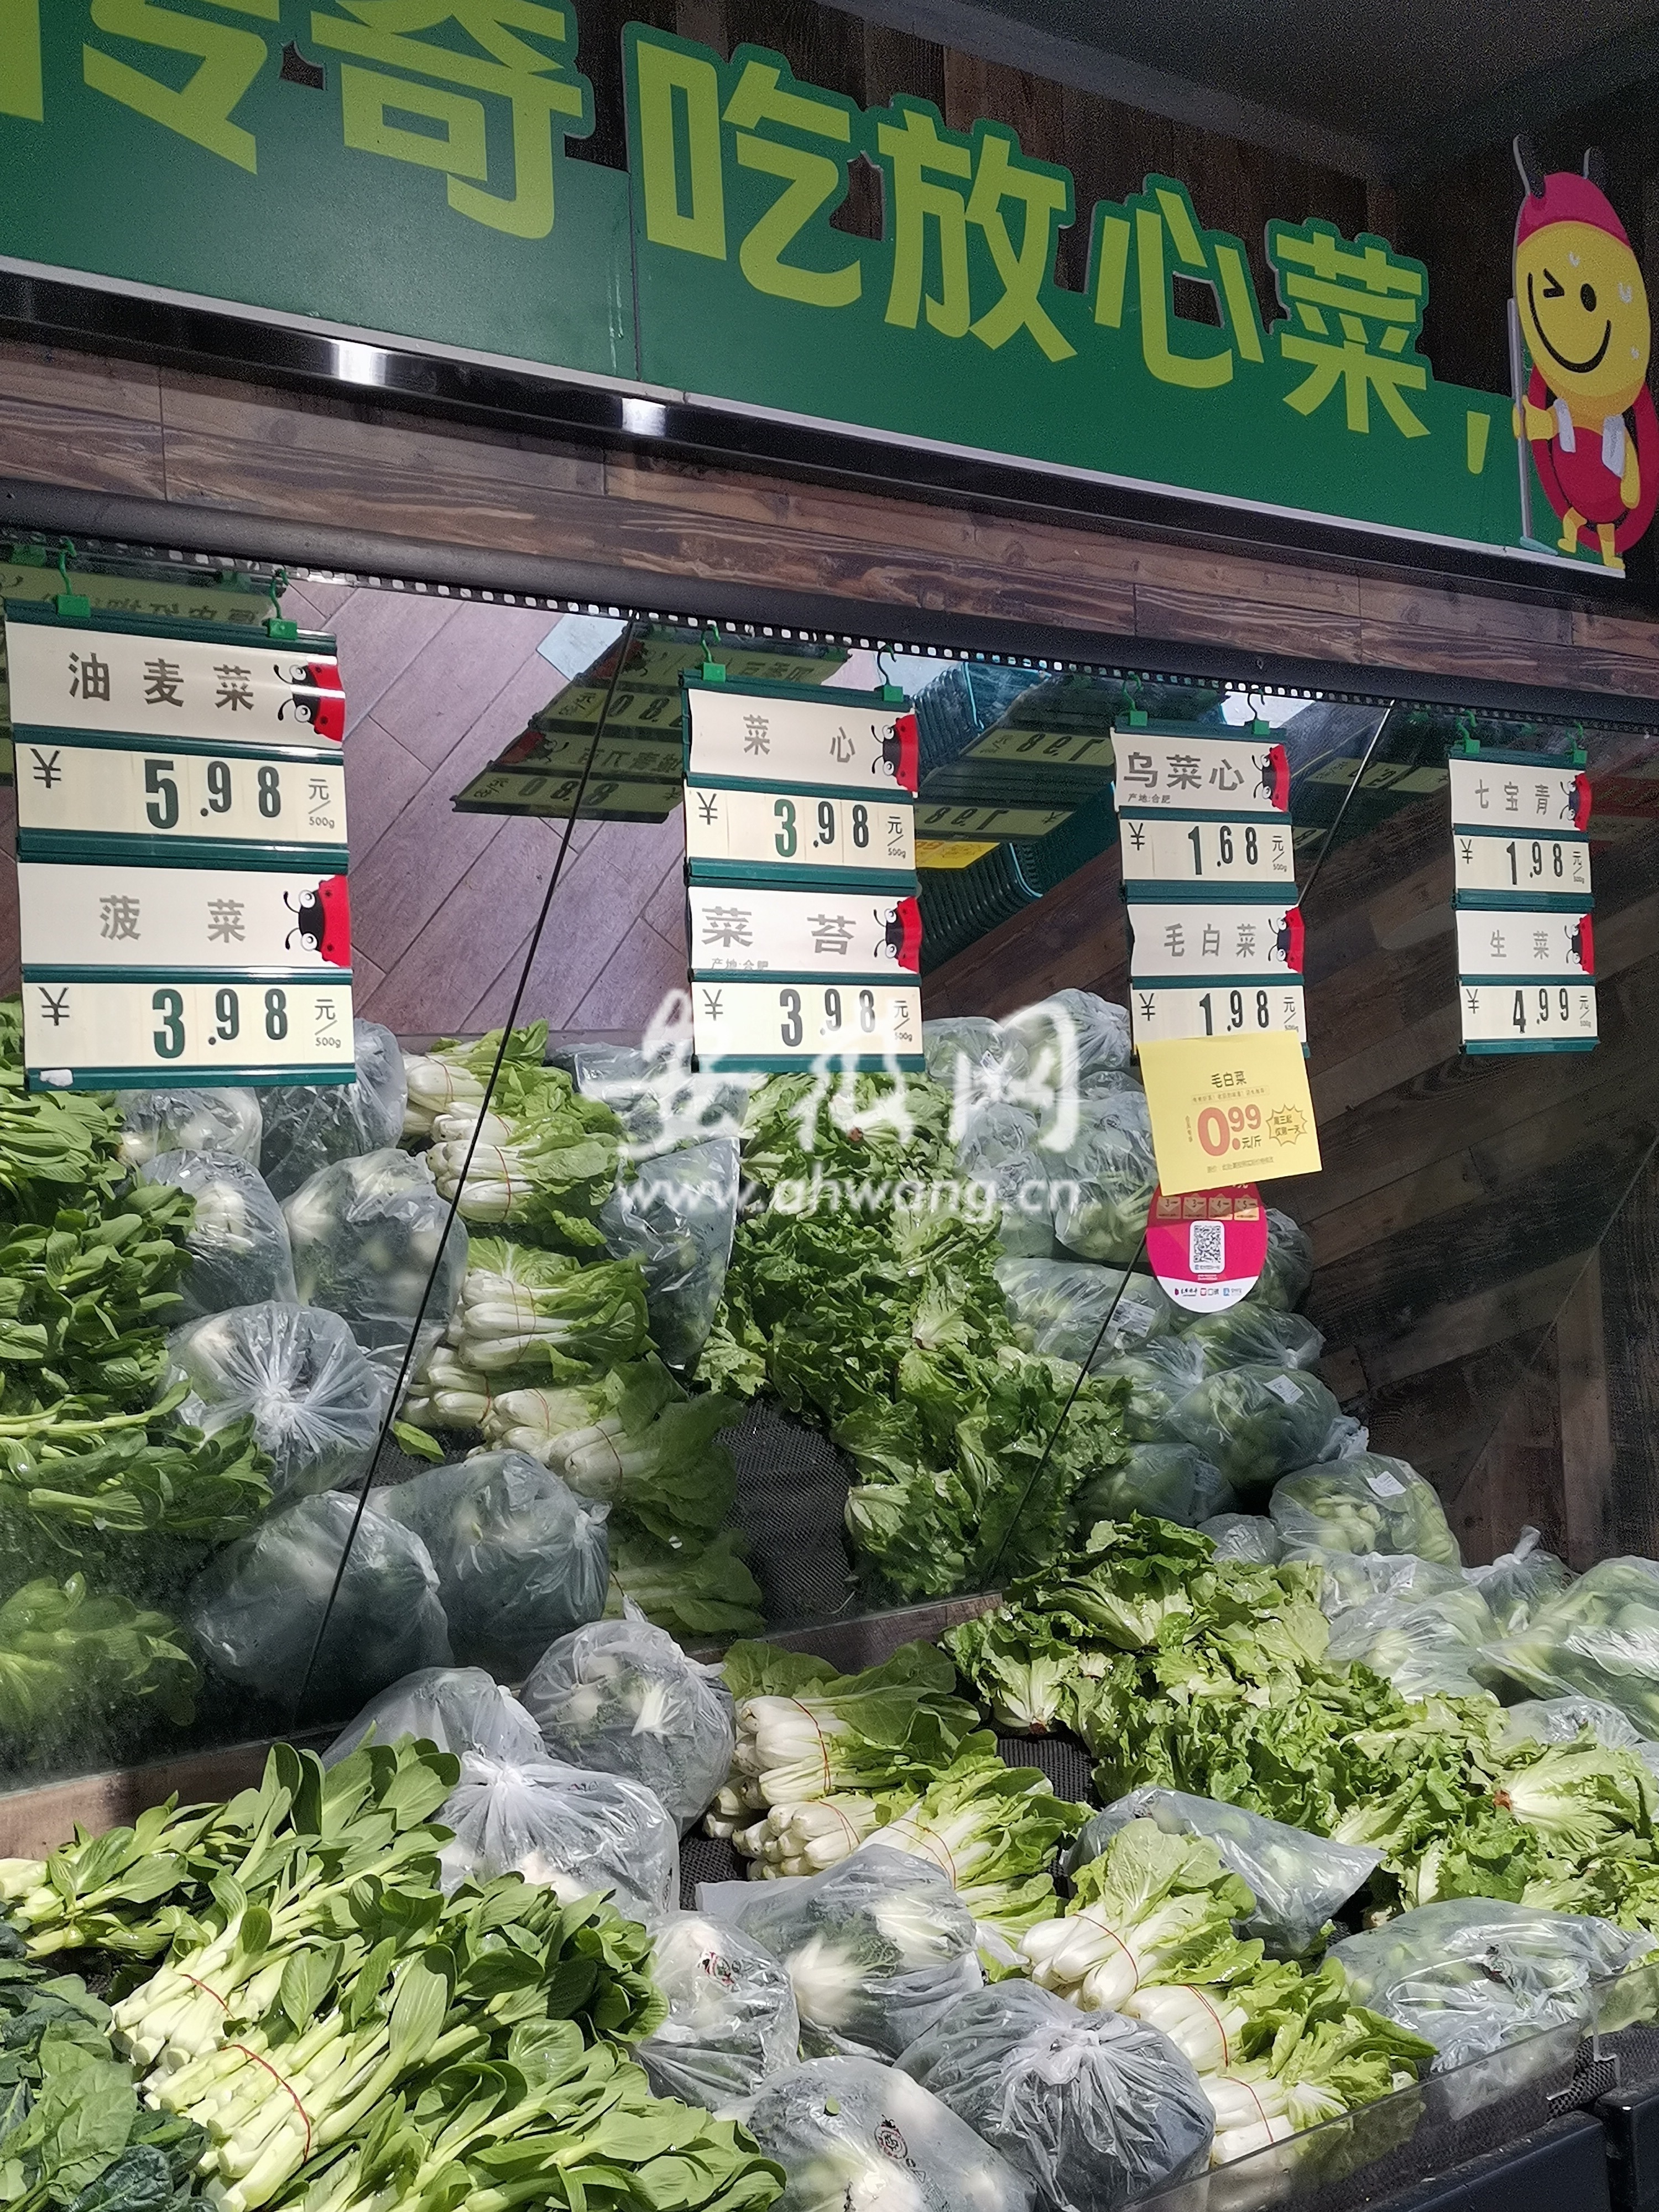 汽油、鲜菜、鲜果变贵了 2月份安徽省CPI环比上涨0.6%